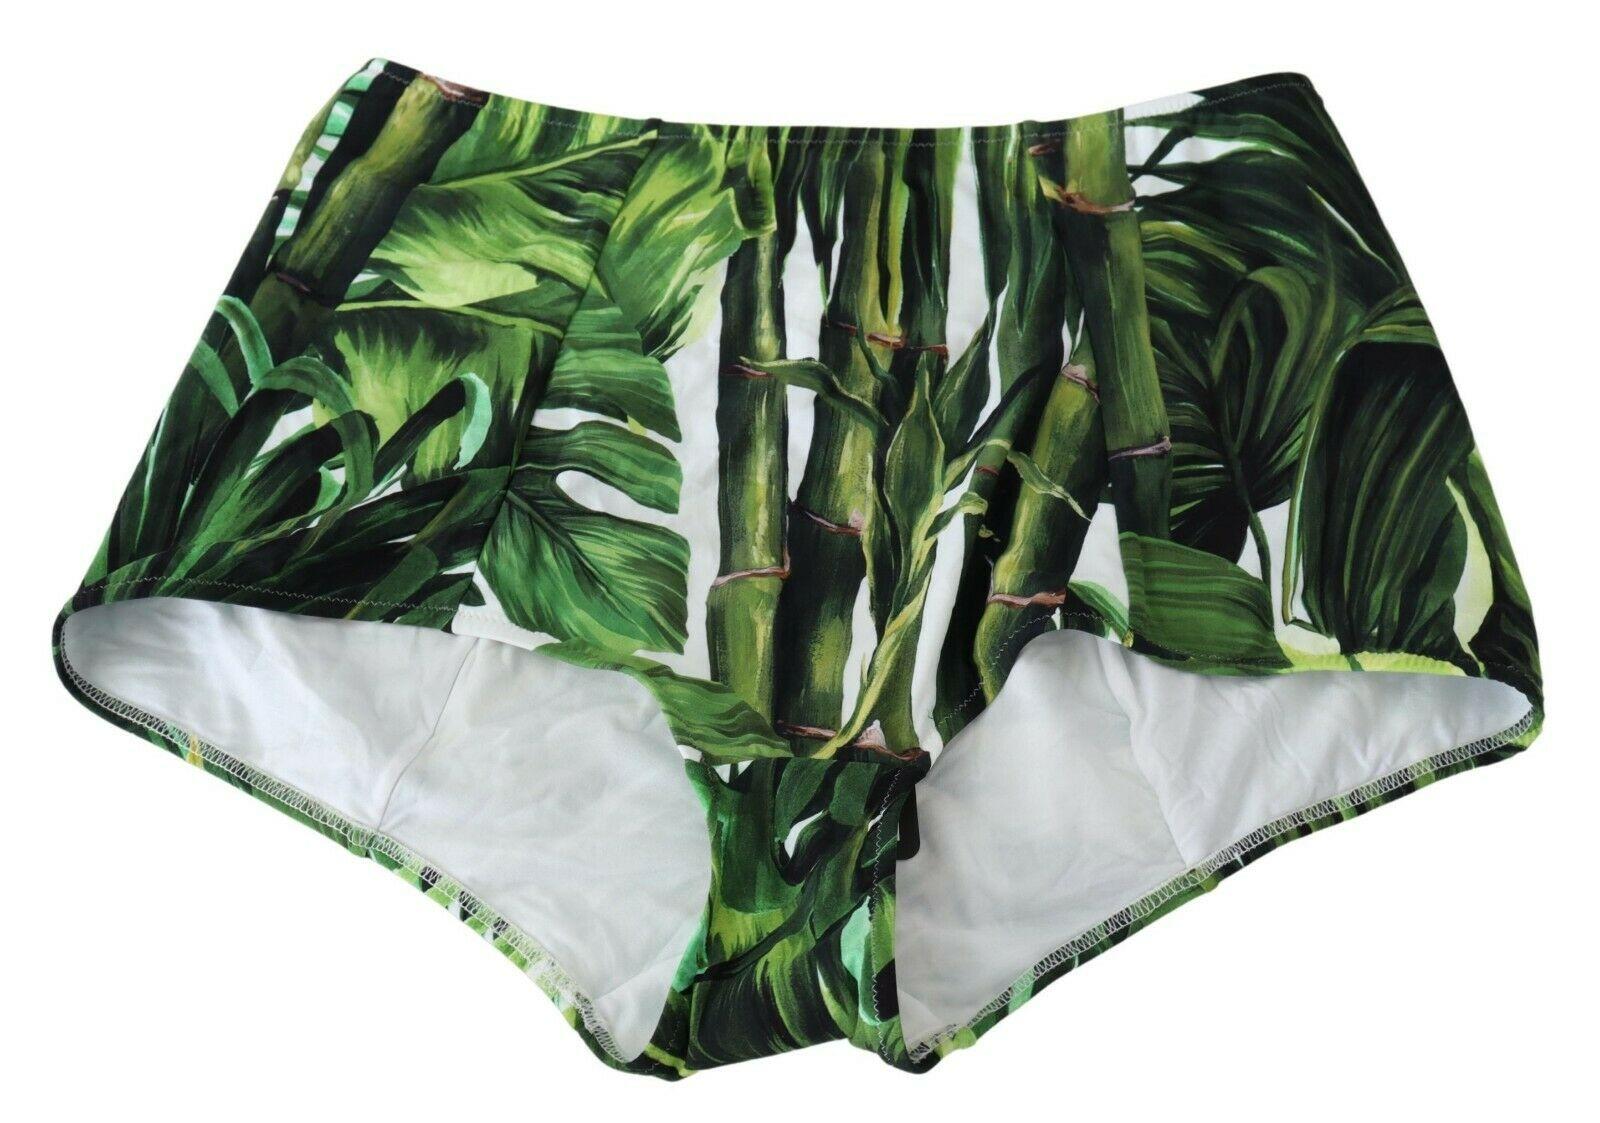 Dolce & Gabbana Green Tropical Jungle Bamboo Swimsuit Swimwear Bikini Beachwear 3